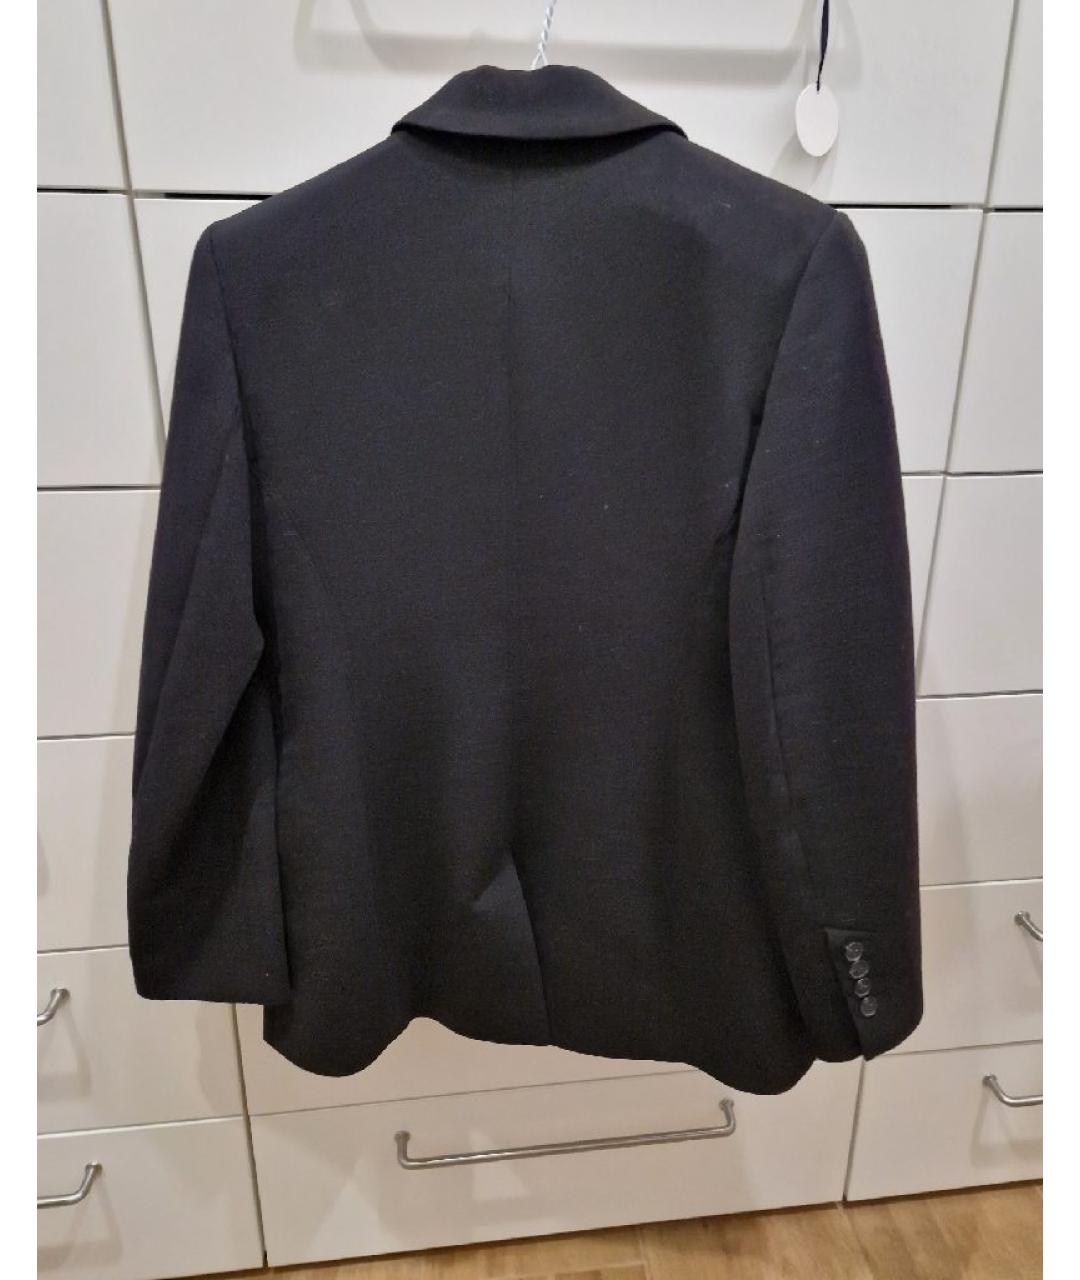 12 STOREEZ Черный шерстяной жакет/пиджак, фото 2